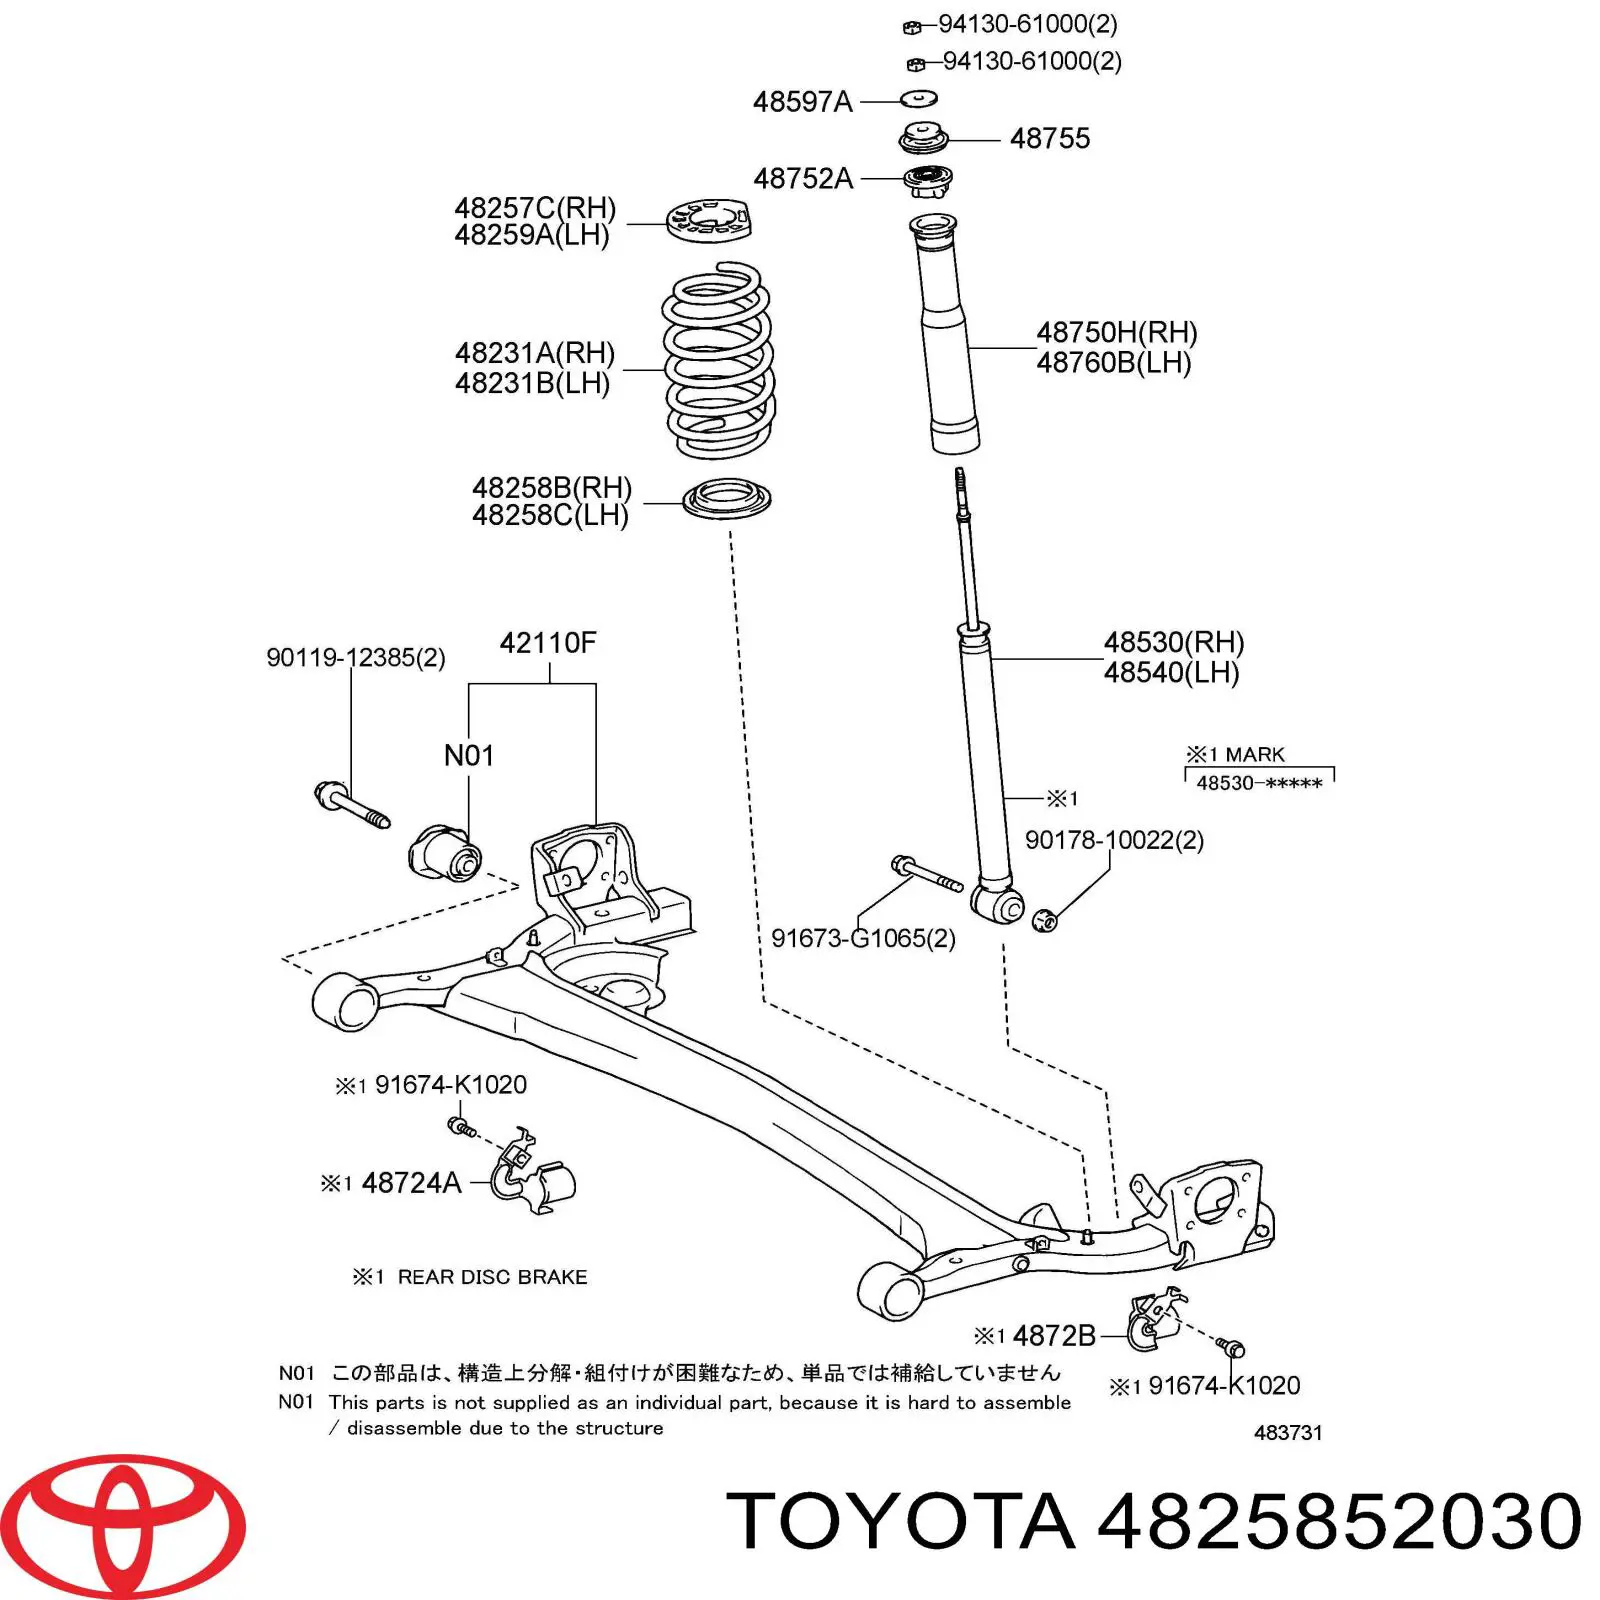 Caja de muelle, Eje trasero, inferior para Toyota Corolla (E15)